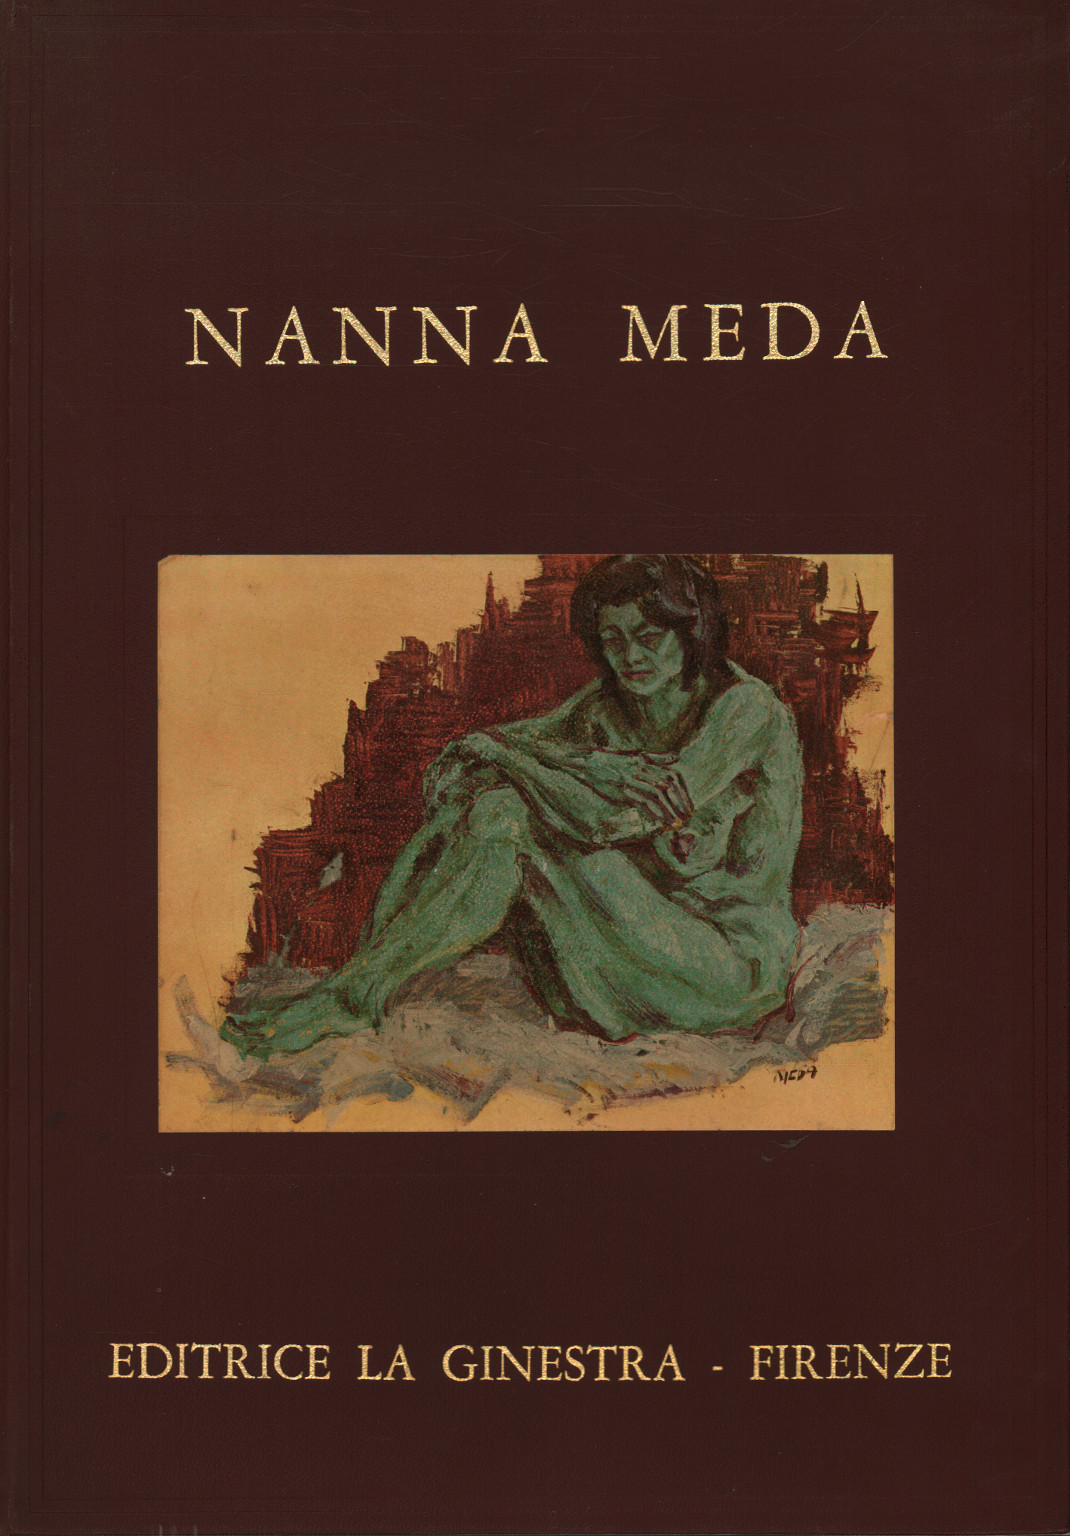 Nanna Meda, s.a.